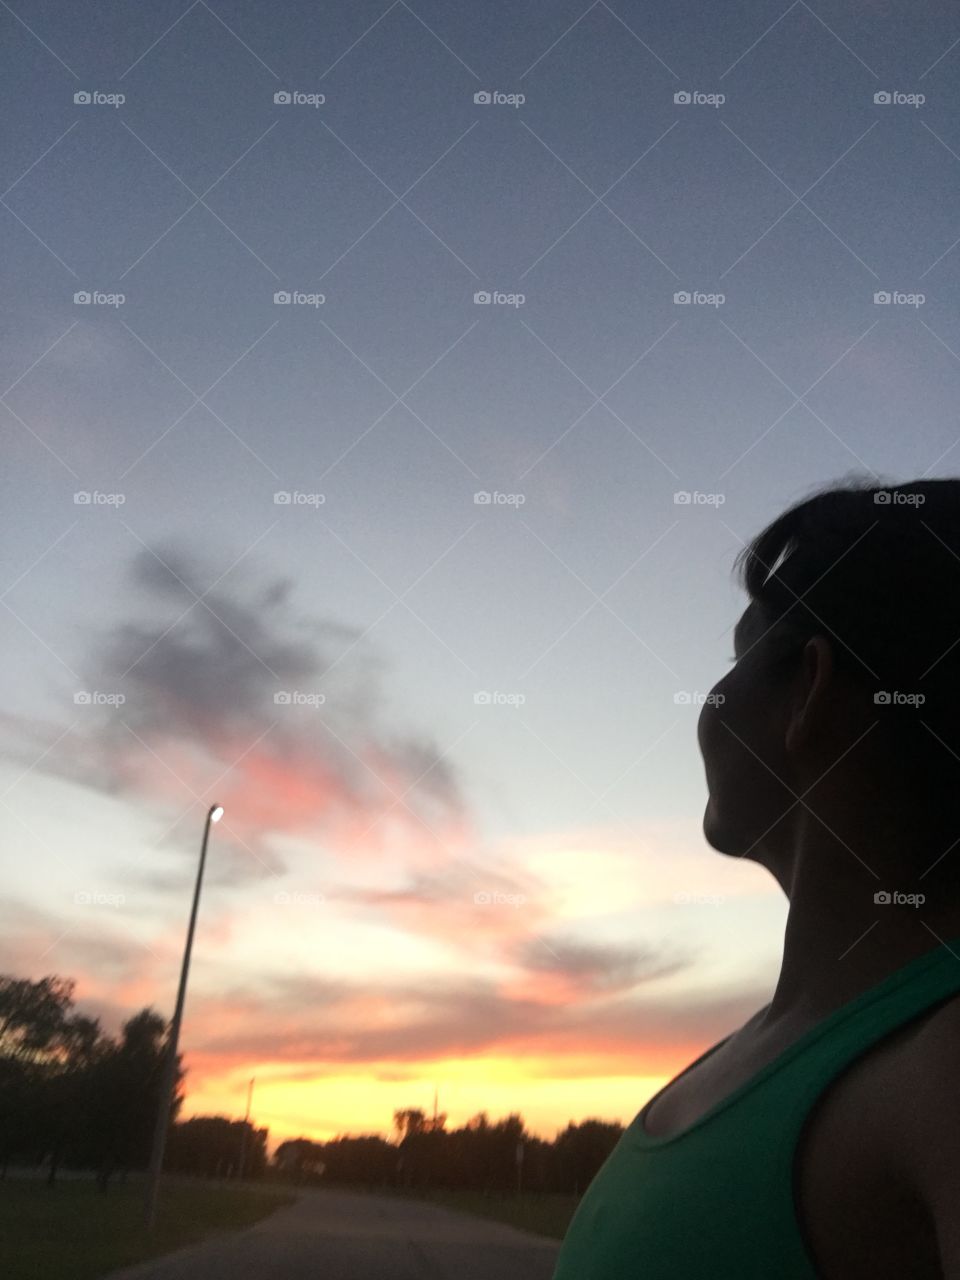 Enjoying the sunset 🌅